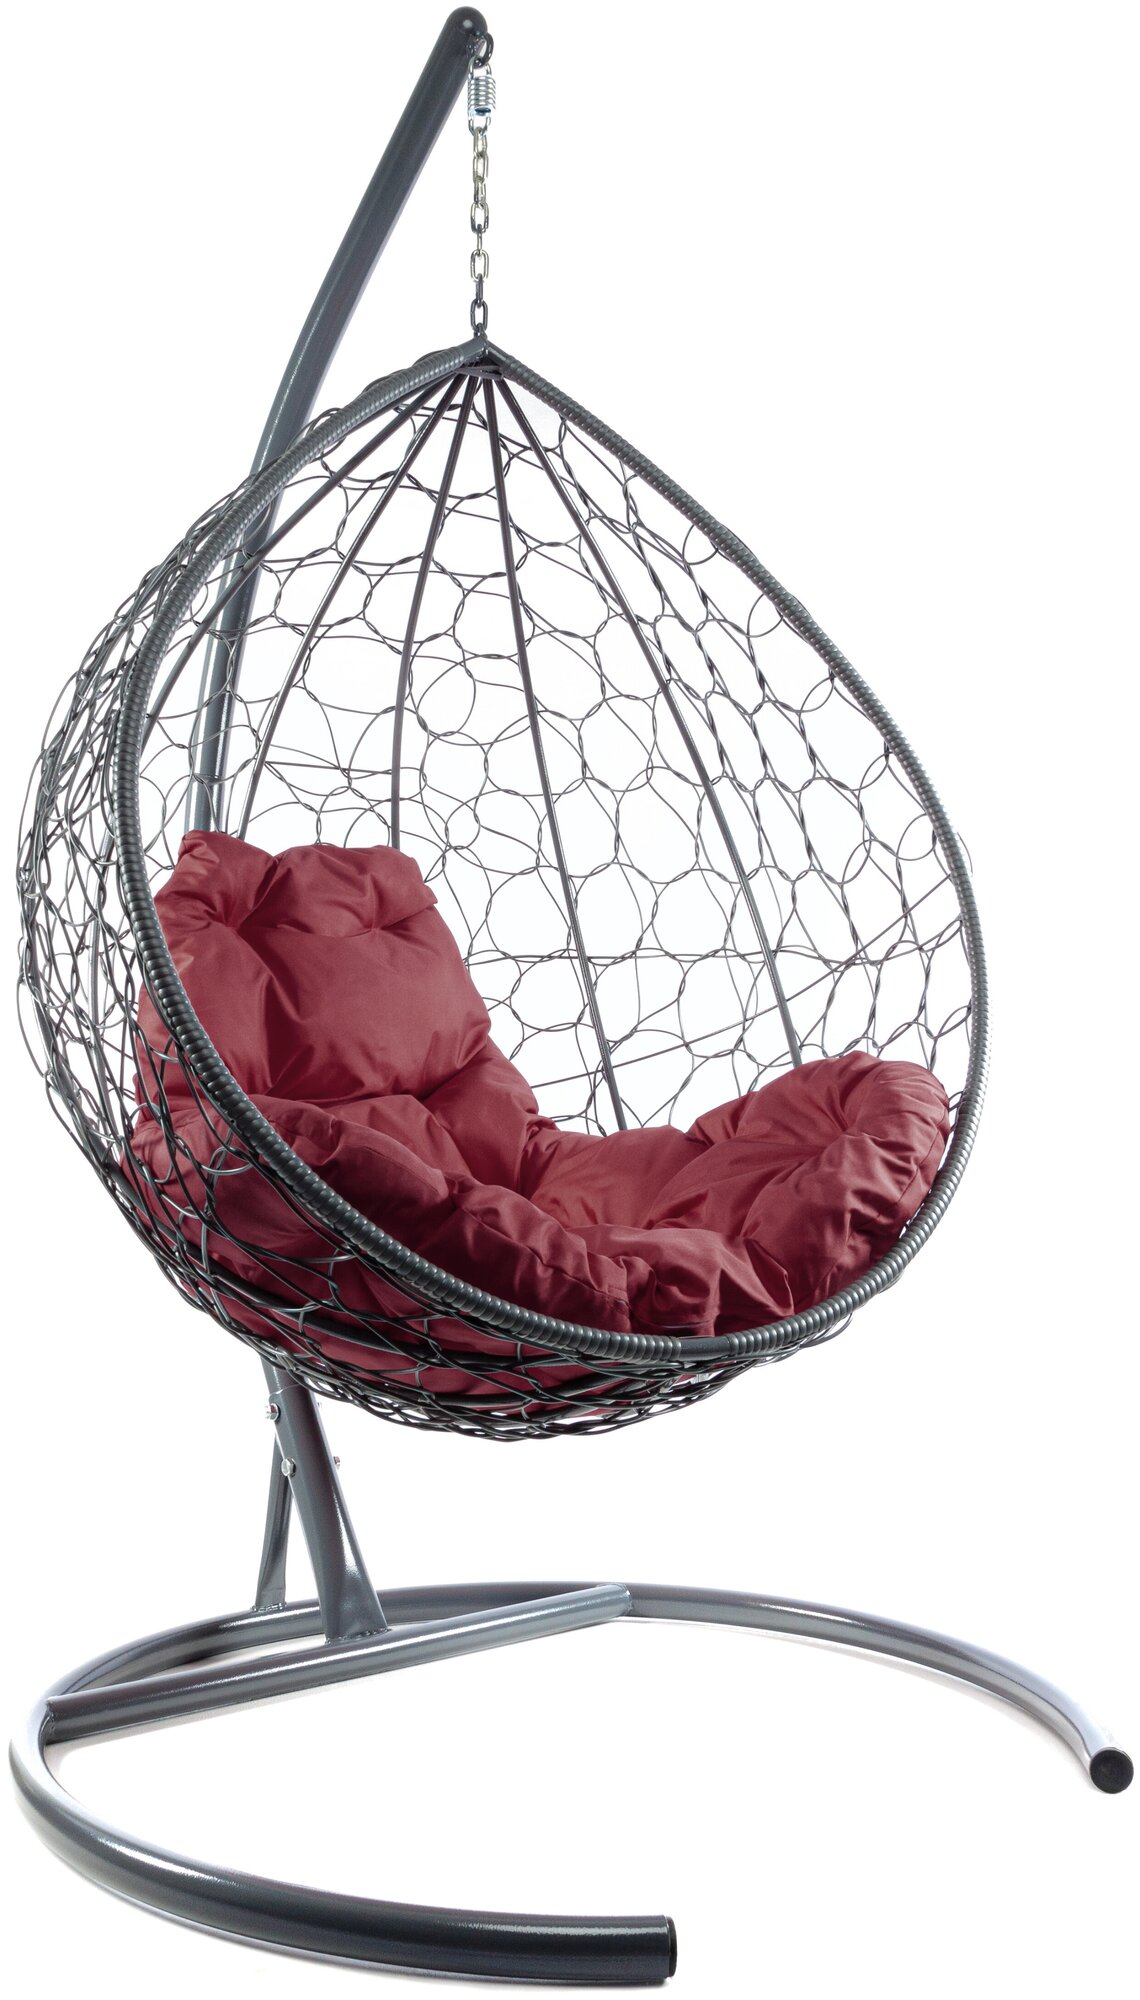 Подвесное кресло m-group капля ротанг серое, бордовая подушка - фотография № 5